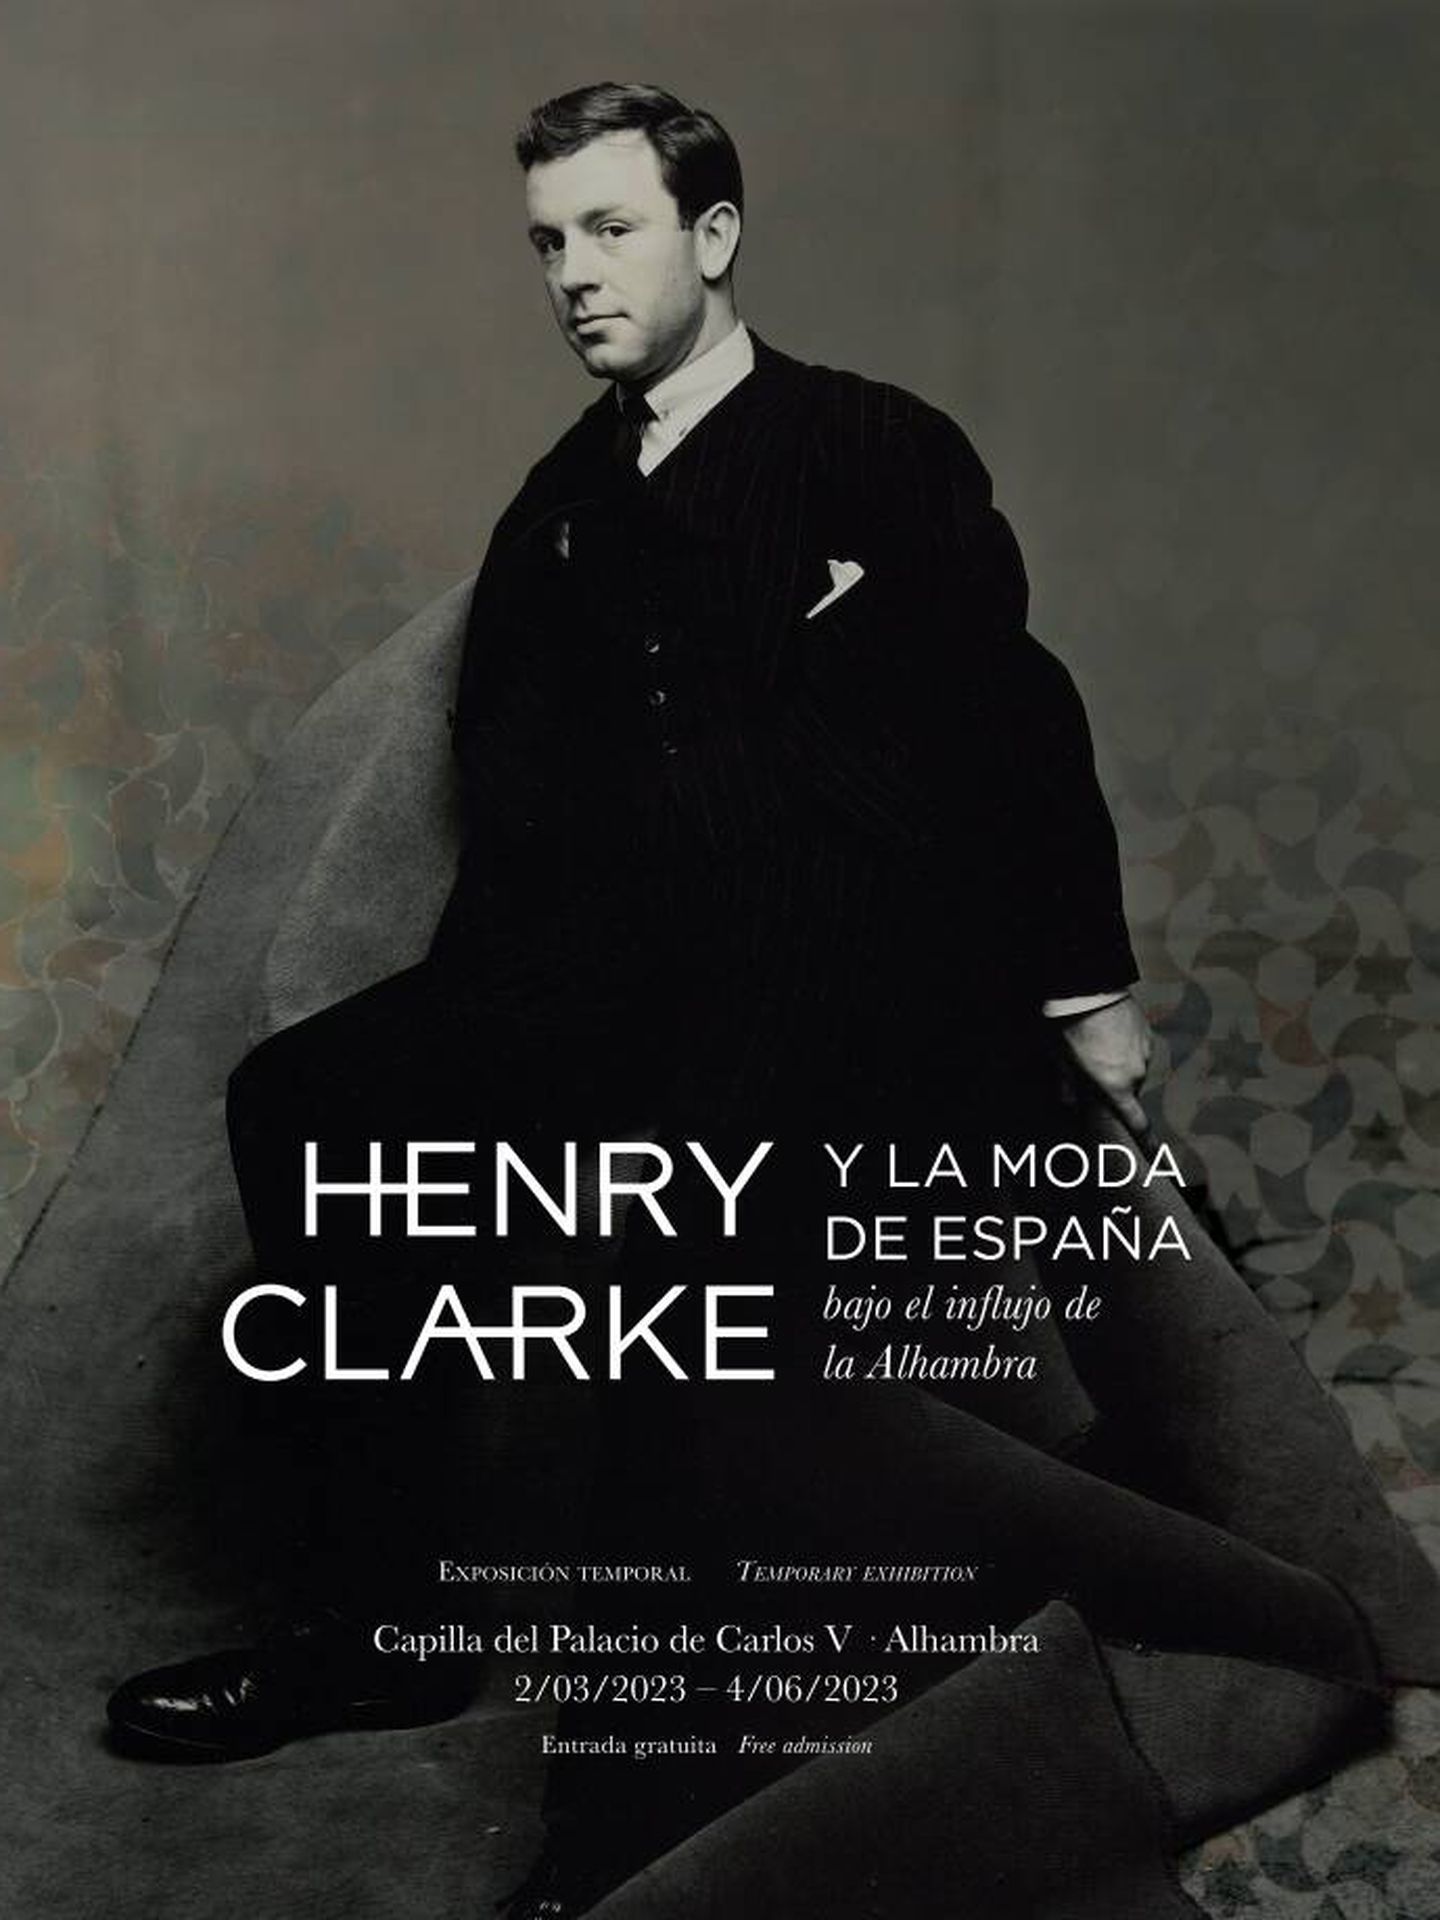 'Henry Clarke y la moda de España bajo el influjo de la Alhambra', hasta el 4 de junio en la Capilla del Palacio de Carlos V de la Alhambra. (Cortesía).